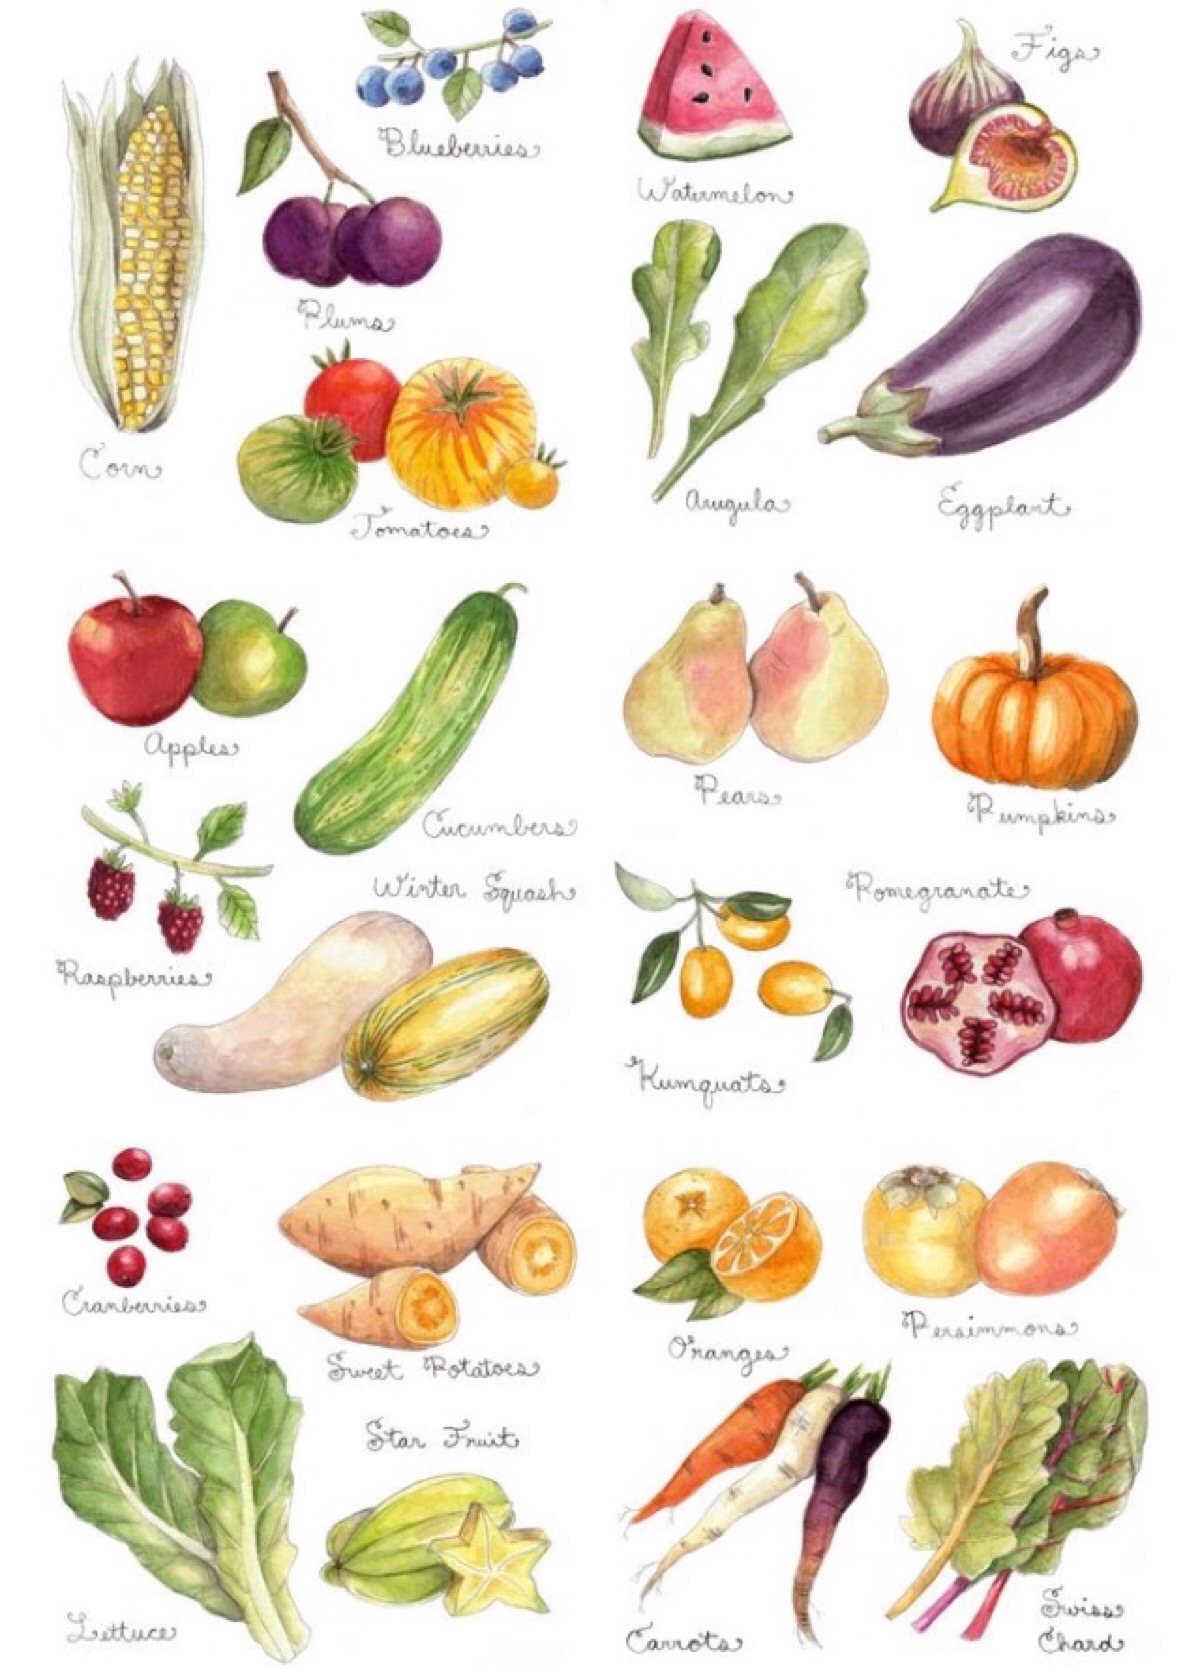 水果蔬菜的上色样式 有点难只供参考颜色形状